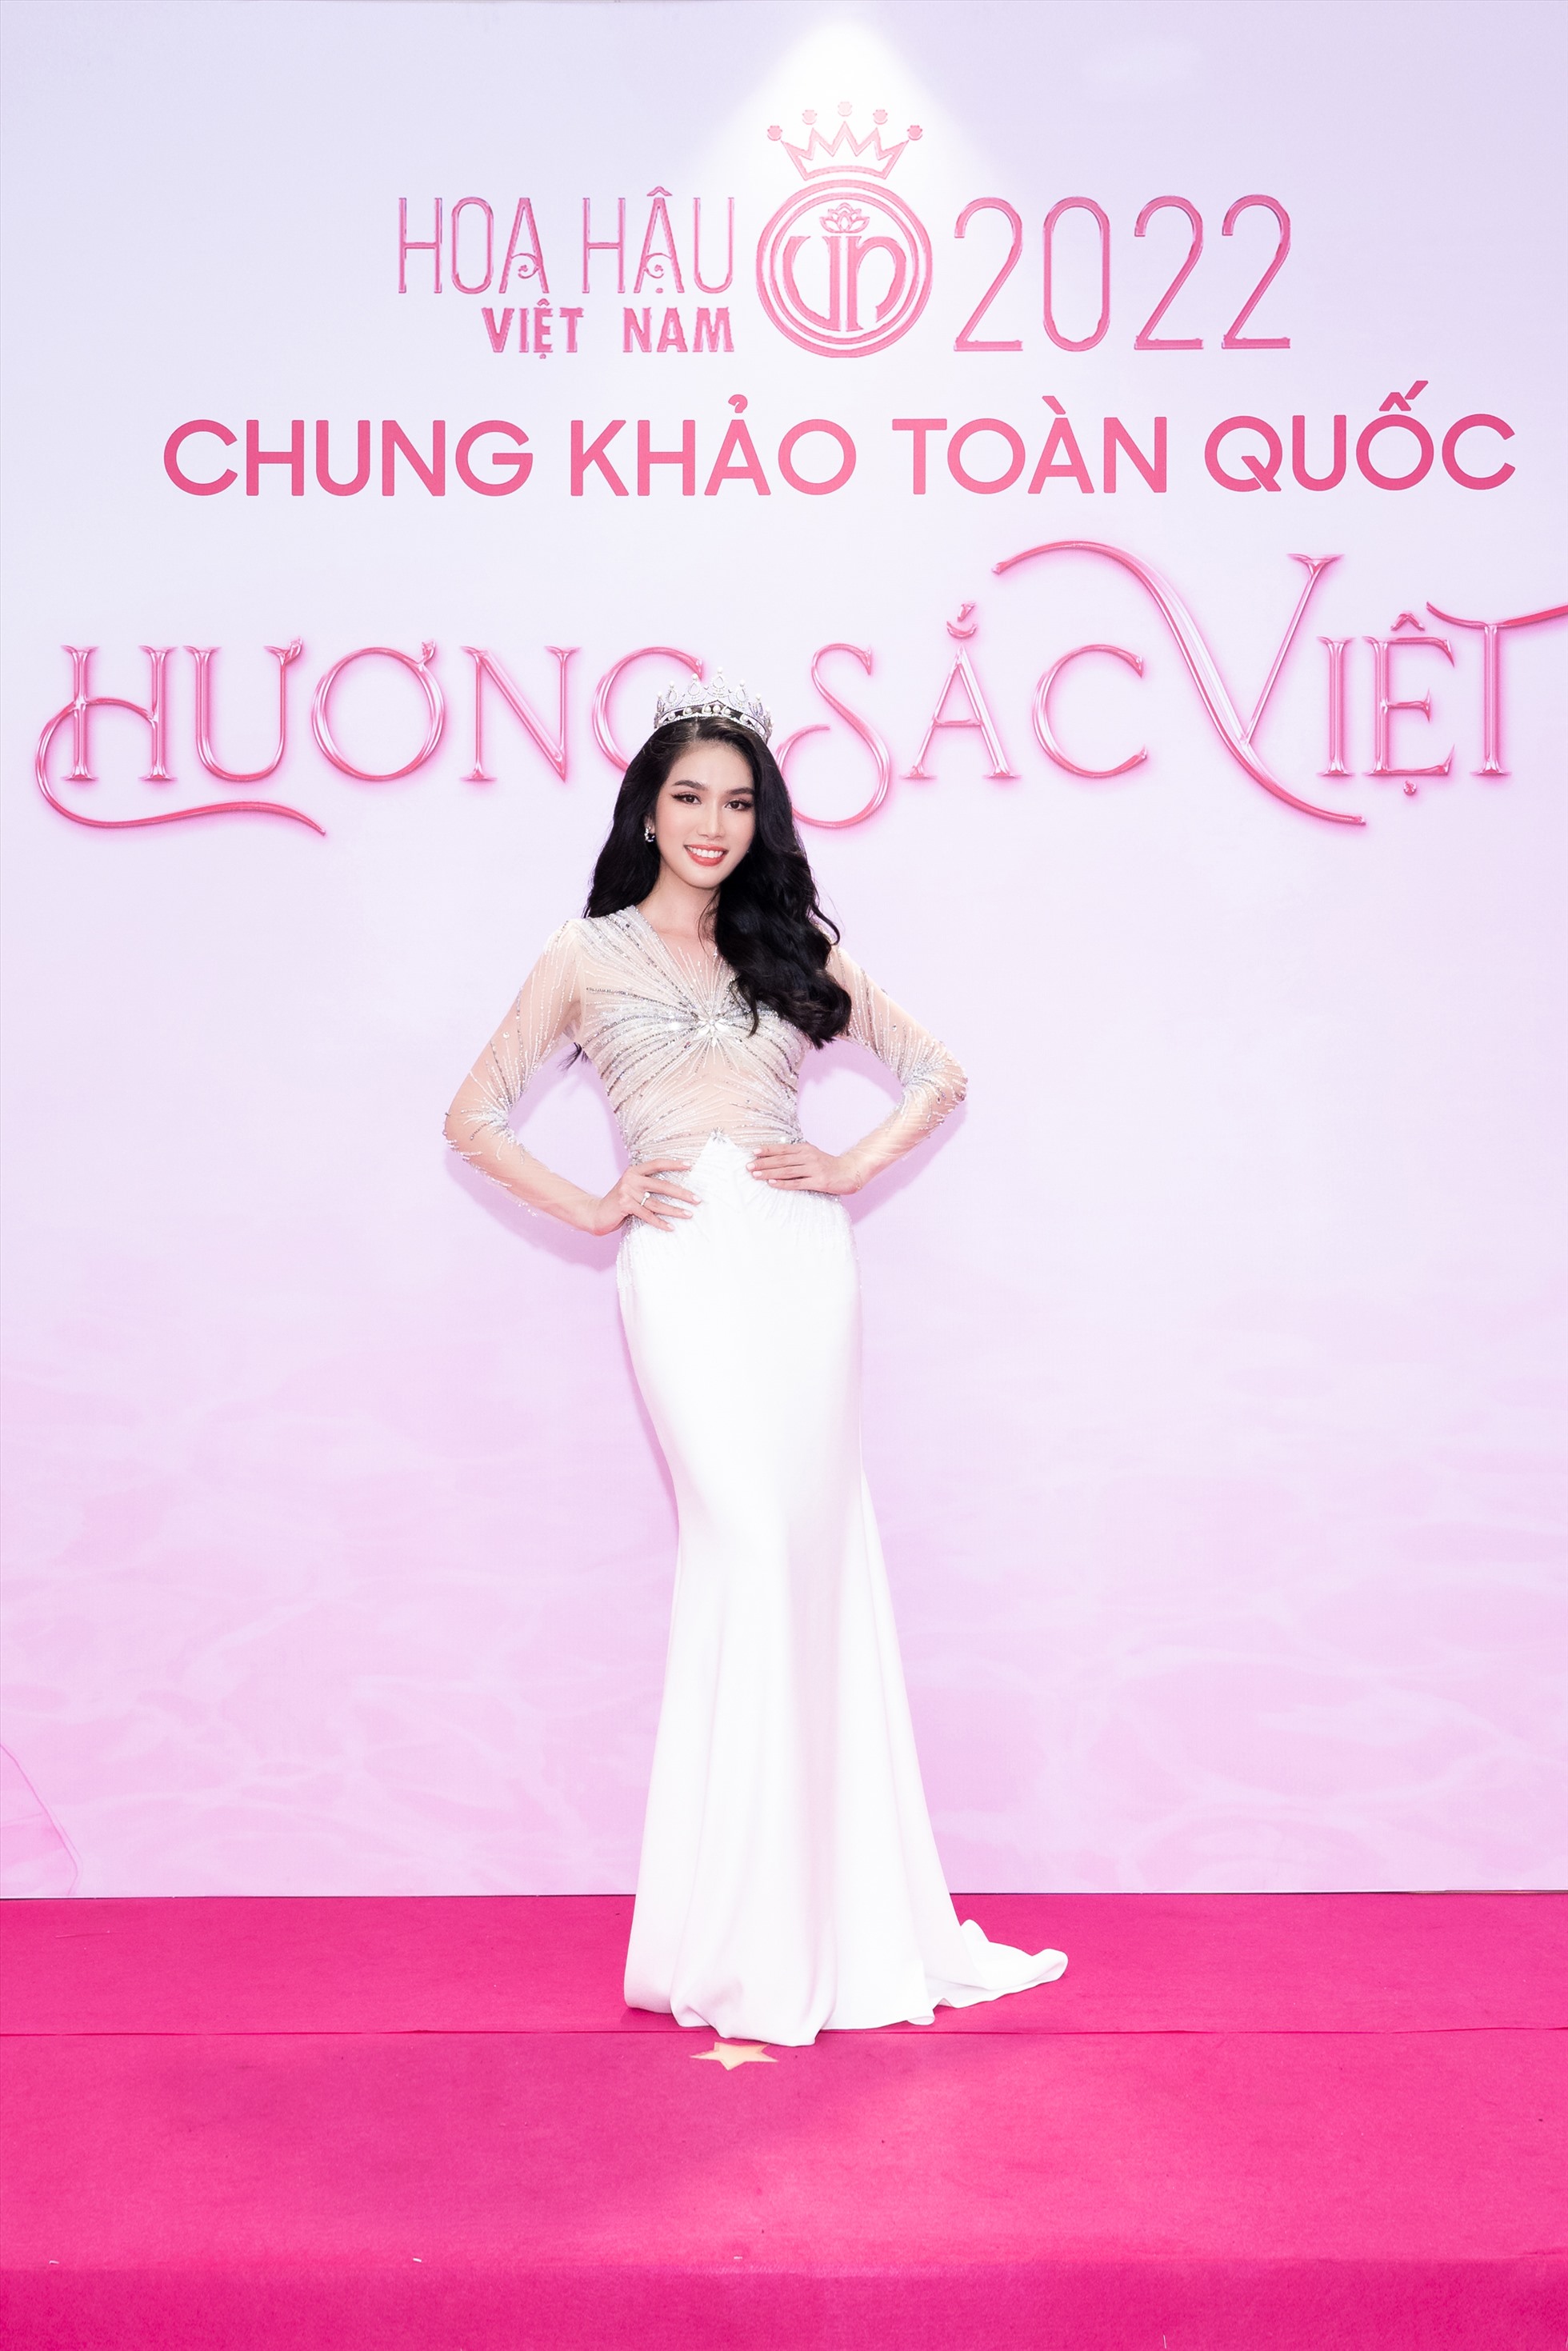 Miss International Vietnam 2022 Phương Anh. Cô cũng là đại diện Việt Nam chinh chiến tại đấu trường Miss International 2022 sắp tới.